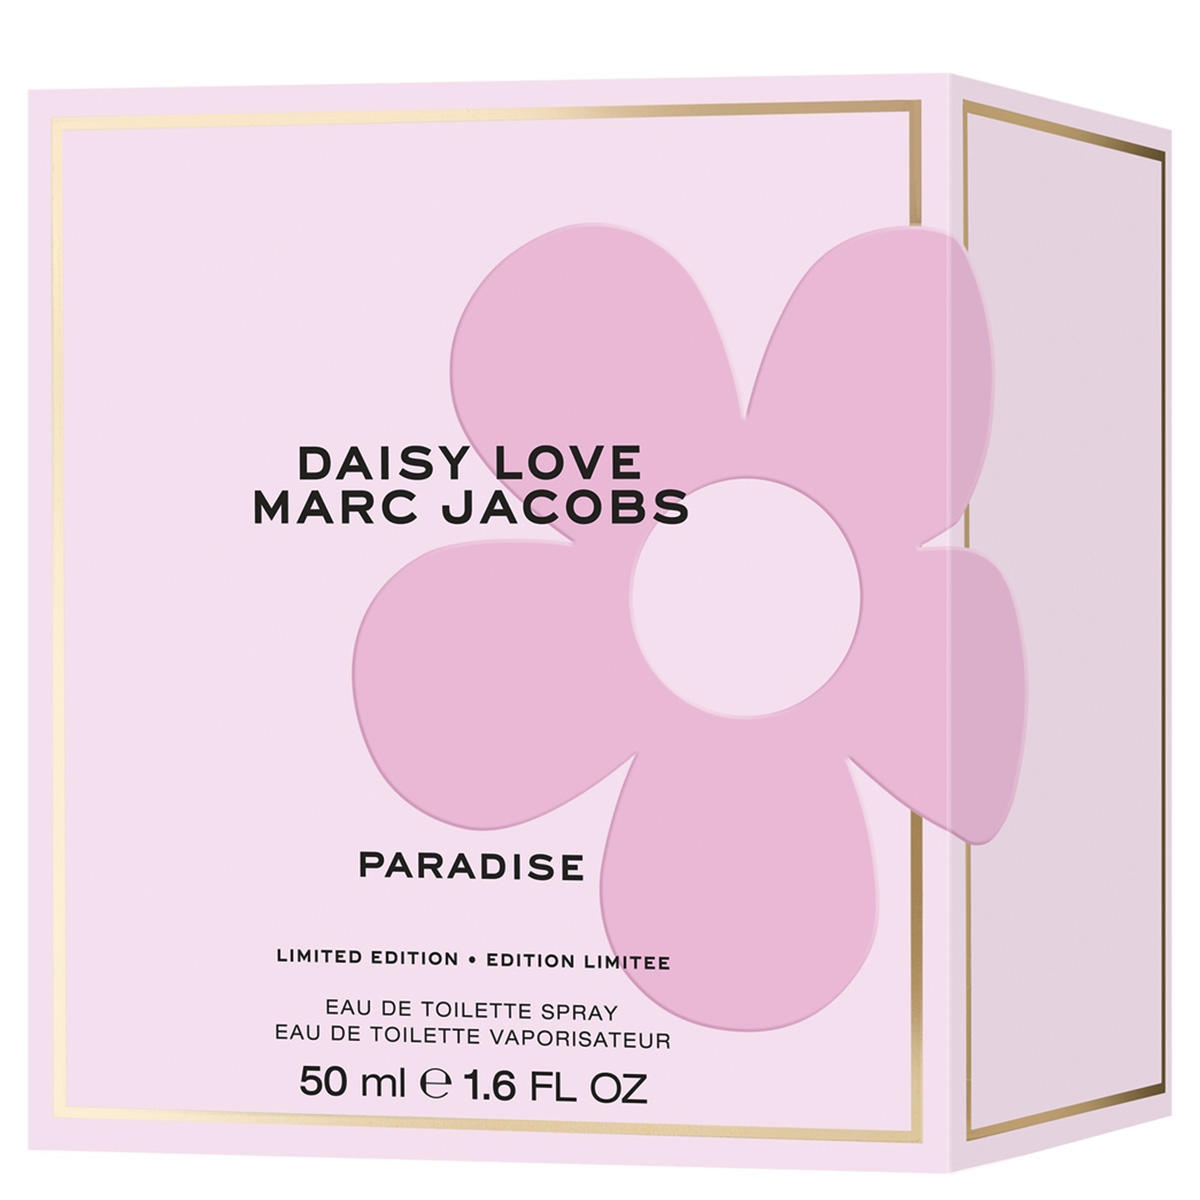 MARC JACOBS DAISY LOVE Paradise Eau de Toilette Limited Edition 50 ml - 3